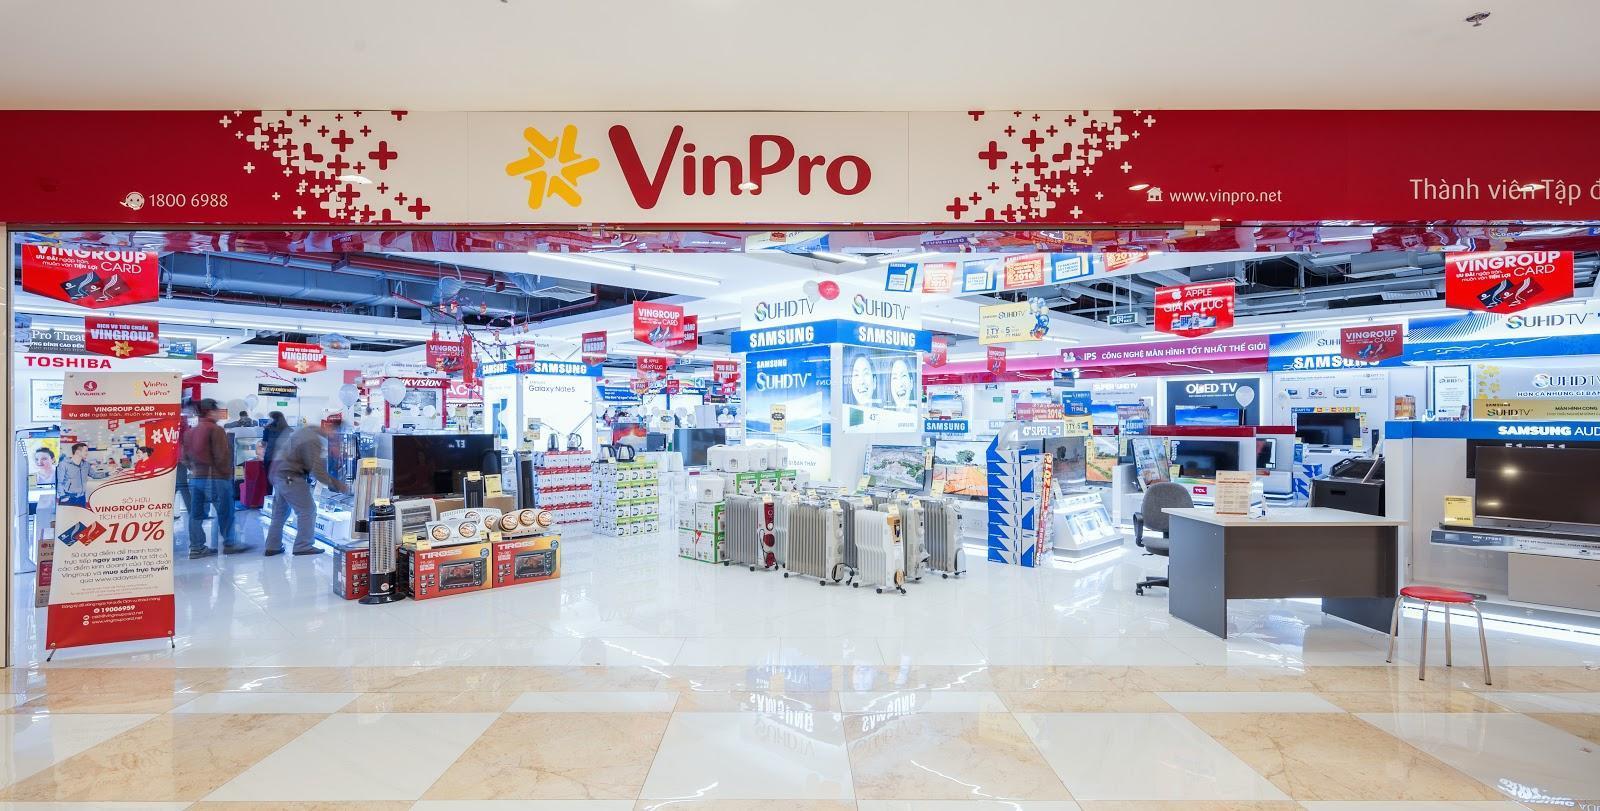 VinPro - Nhà cung cấp bán lẻ đồ Công nghệ - Điện máy chính hãng